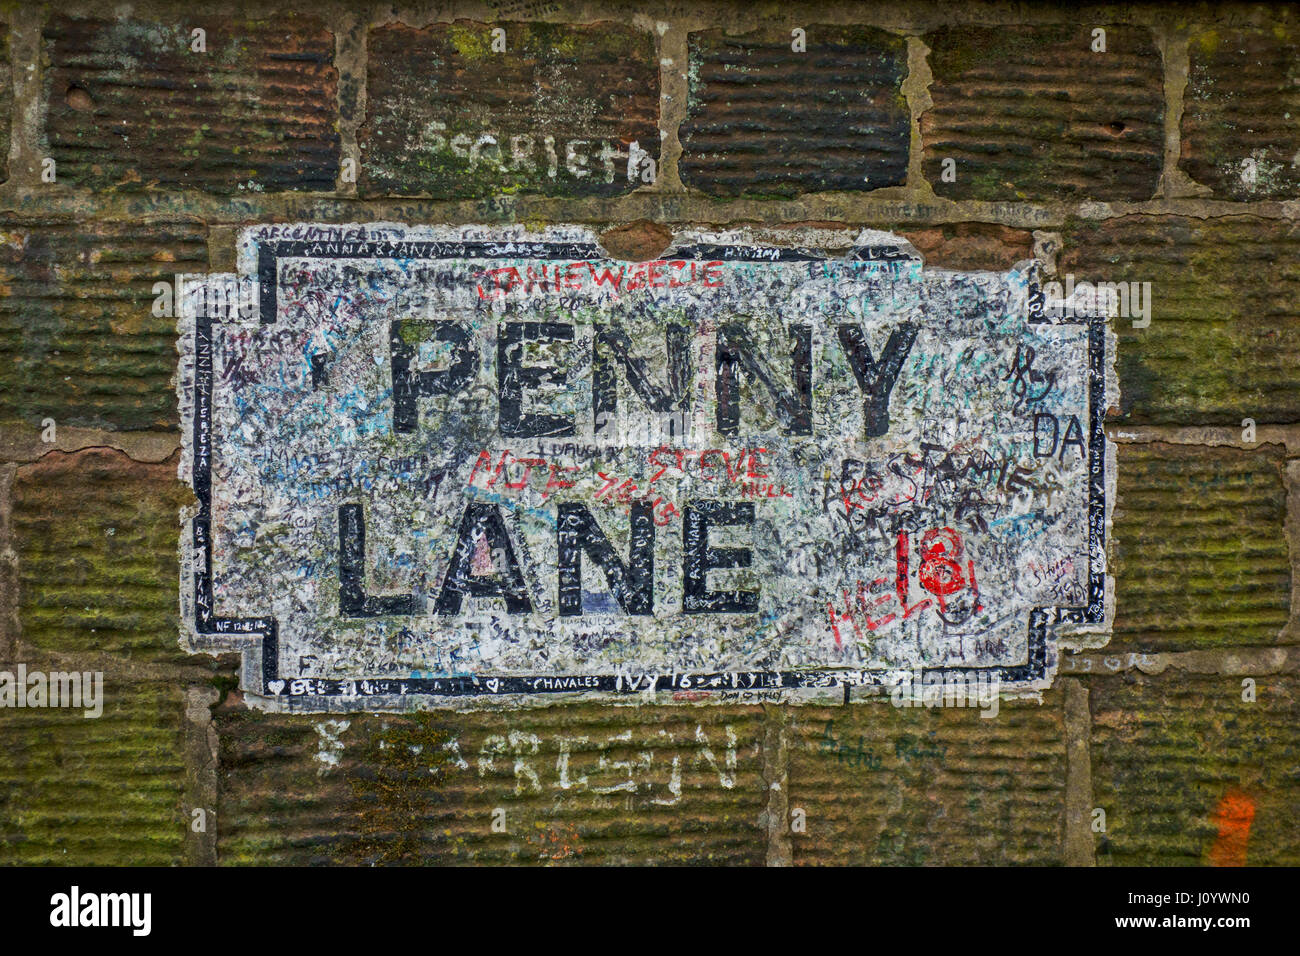 Penny Lane street sign à Liverpool. Rendu célèbre par les Beatles. Banque D'Images